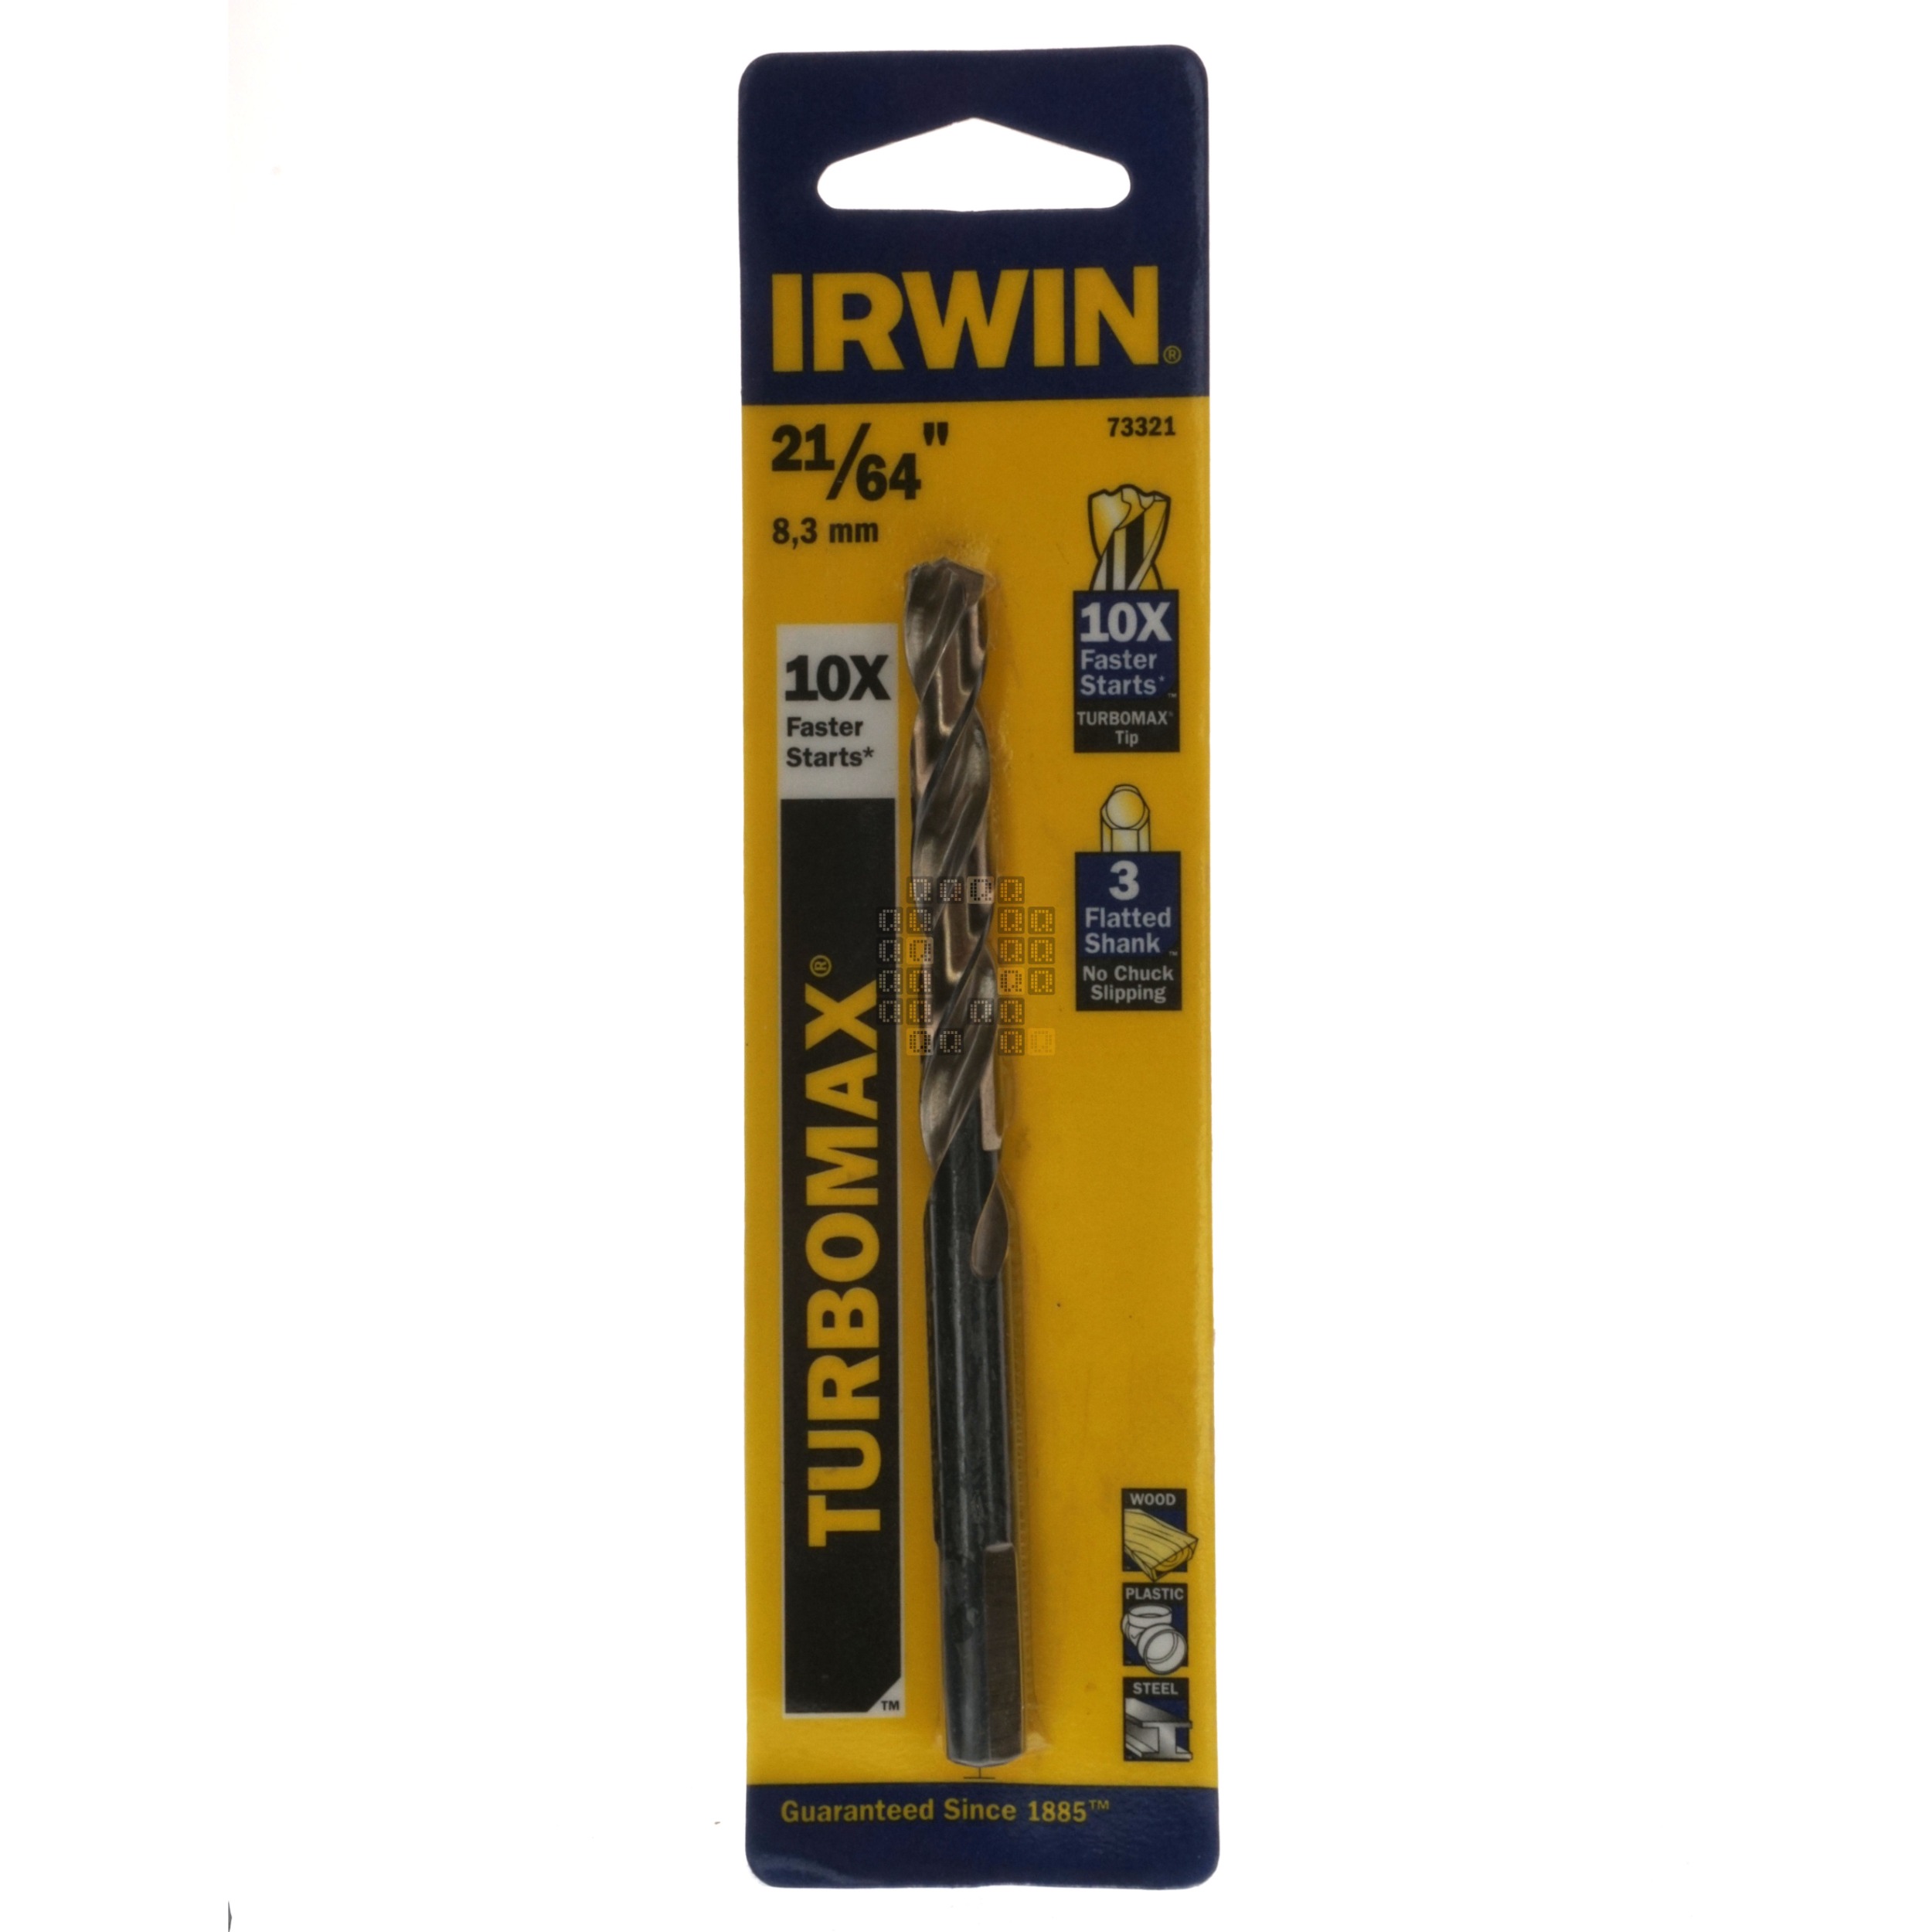 Irwin Industrial Tools 73321 TURBOMAX 21/64" Drill Bit, 3-Flatted Shank